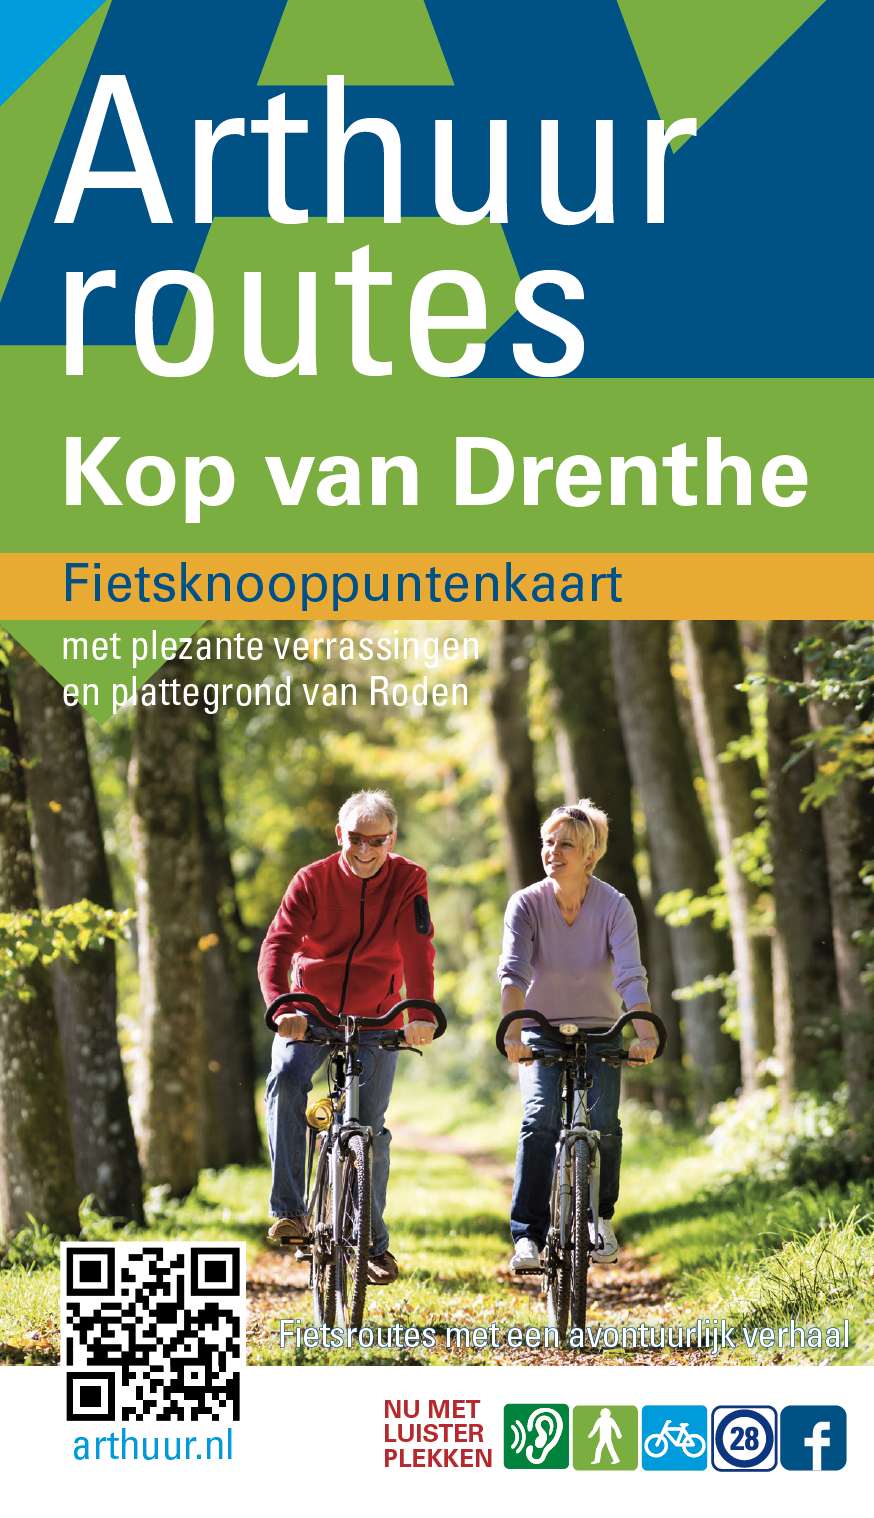 Arthuur Fietsknooppuntenkaart Kop van Drenthe